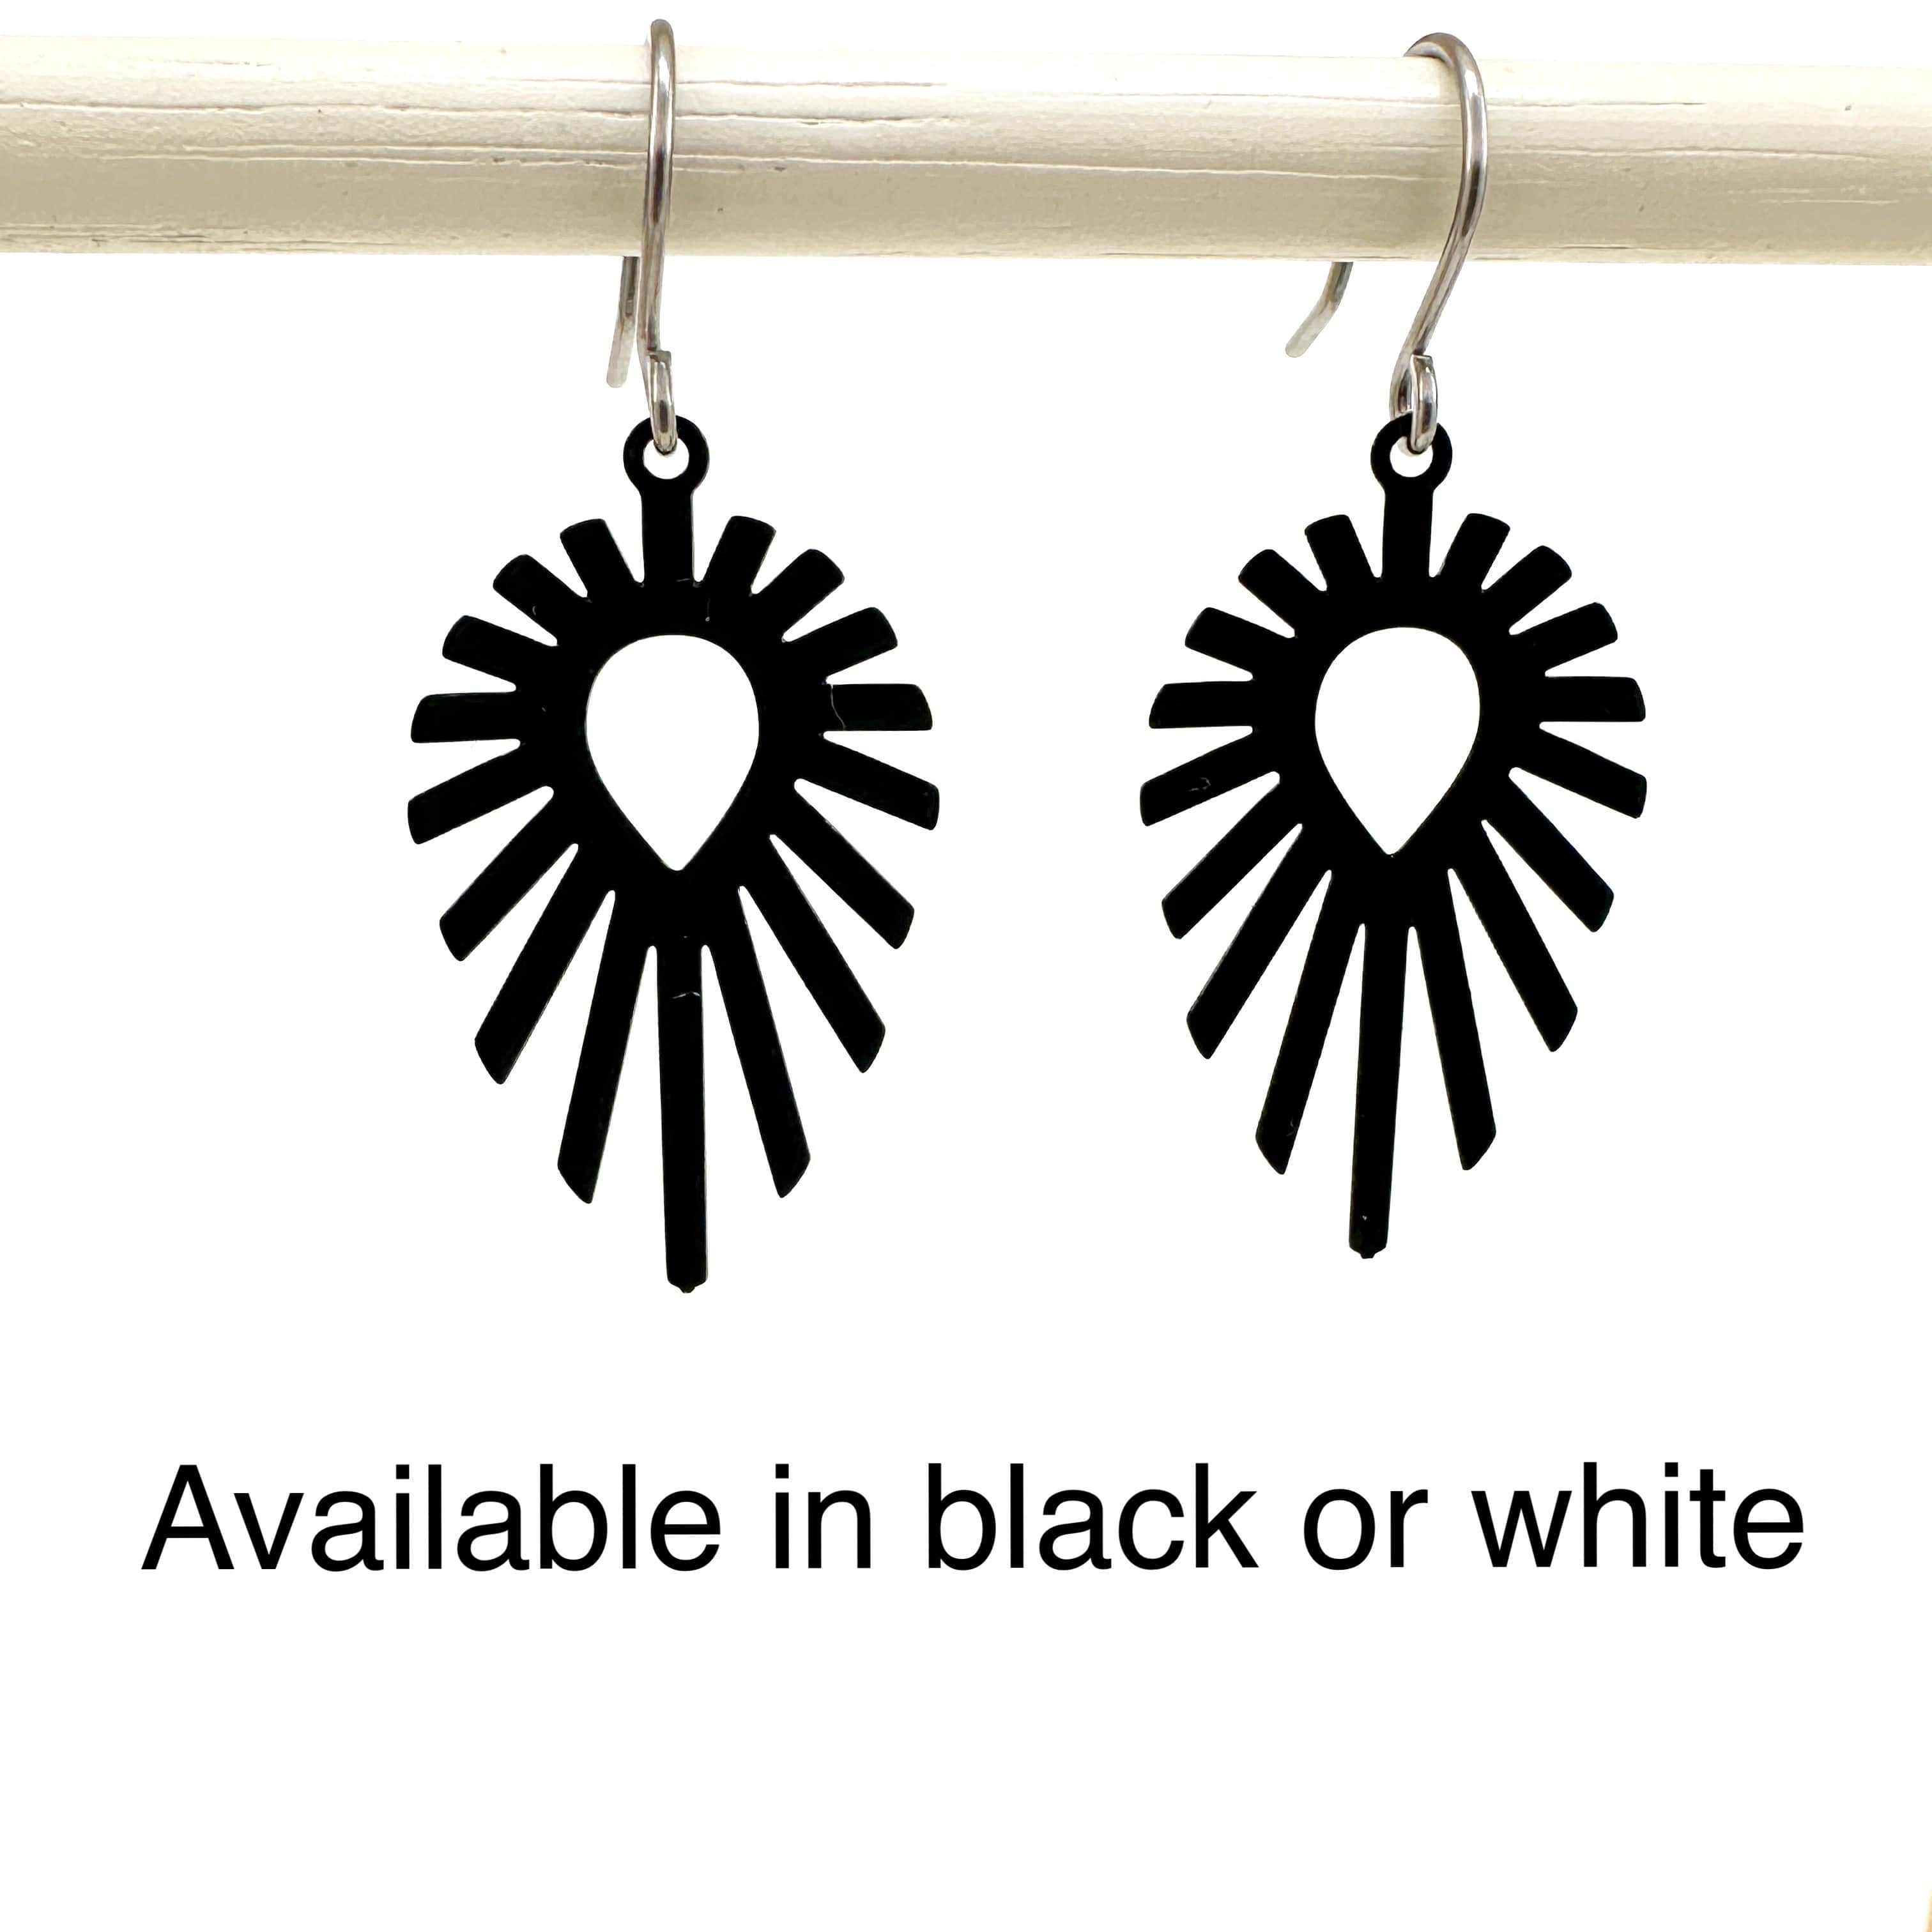 Shine teardrop black/white earrings